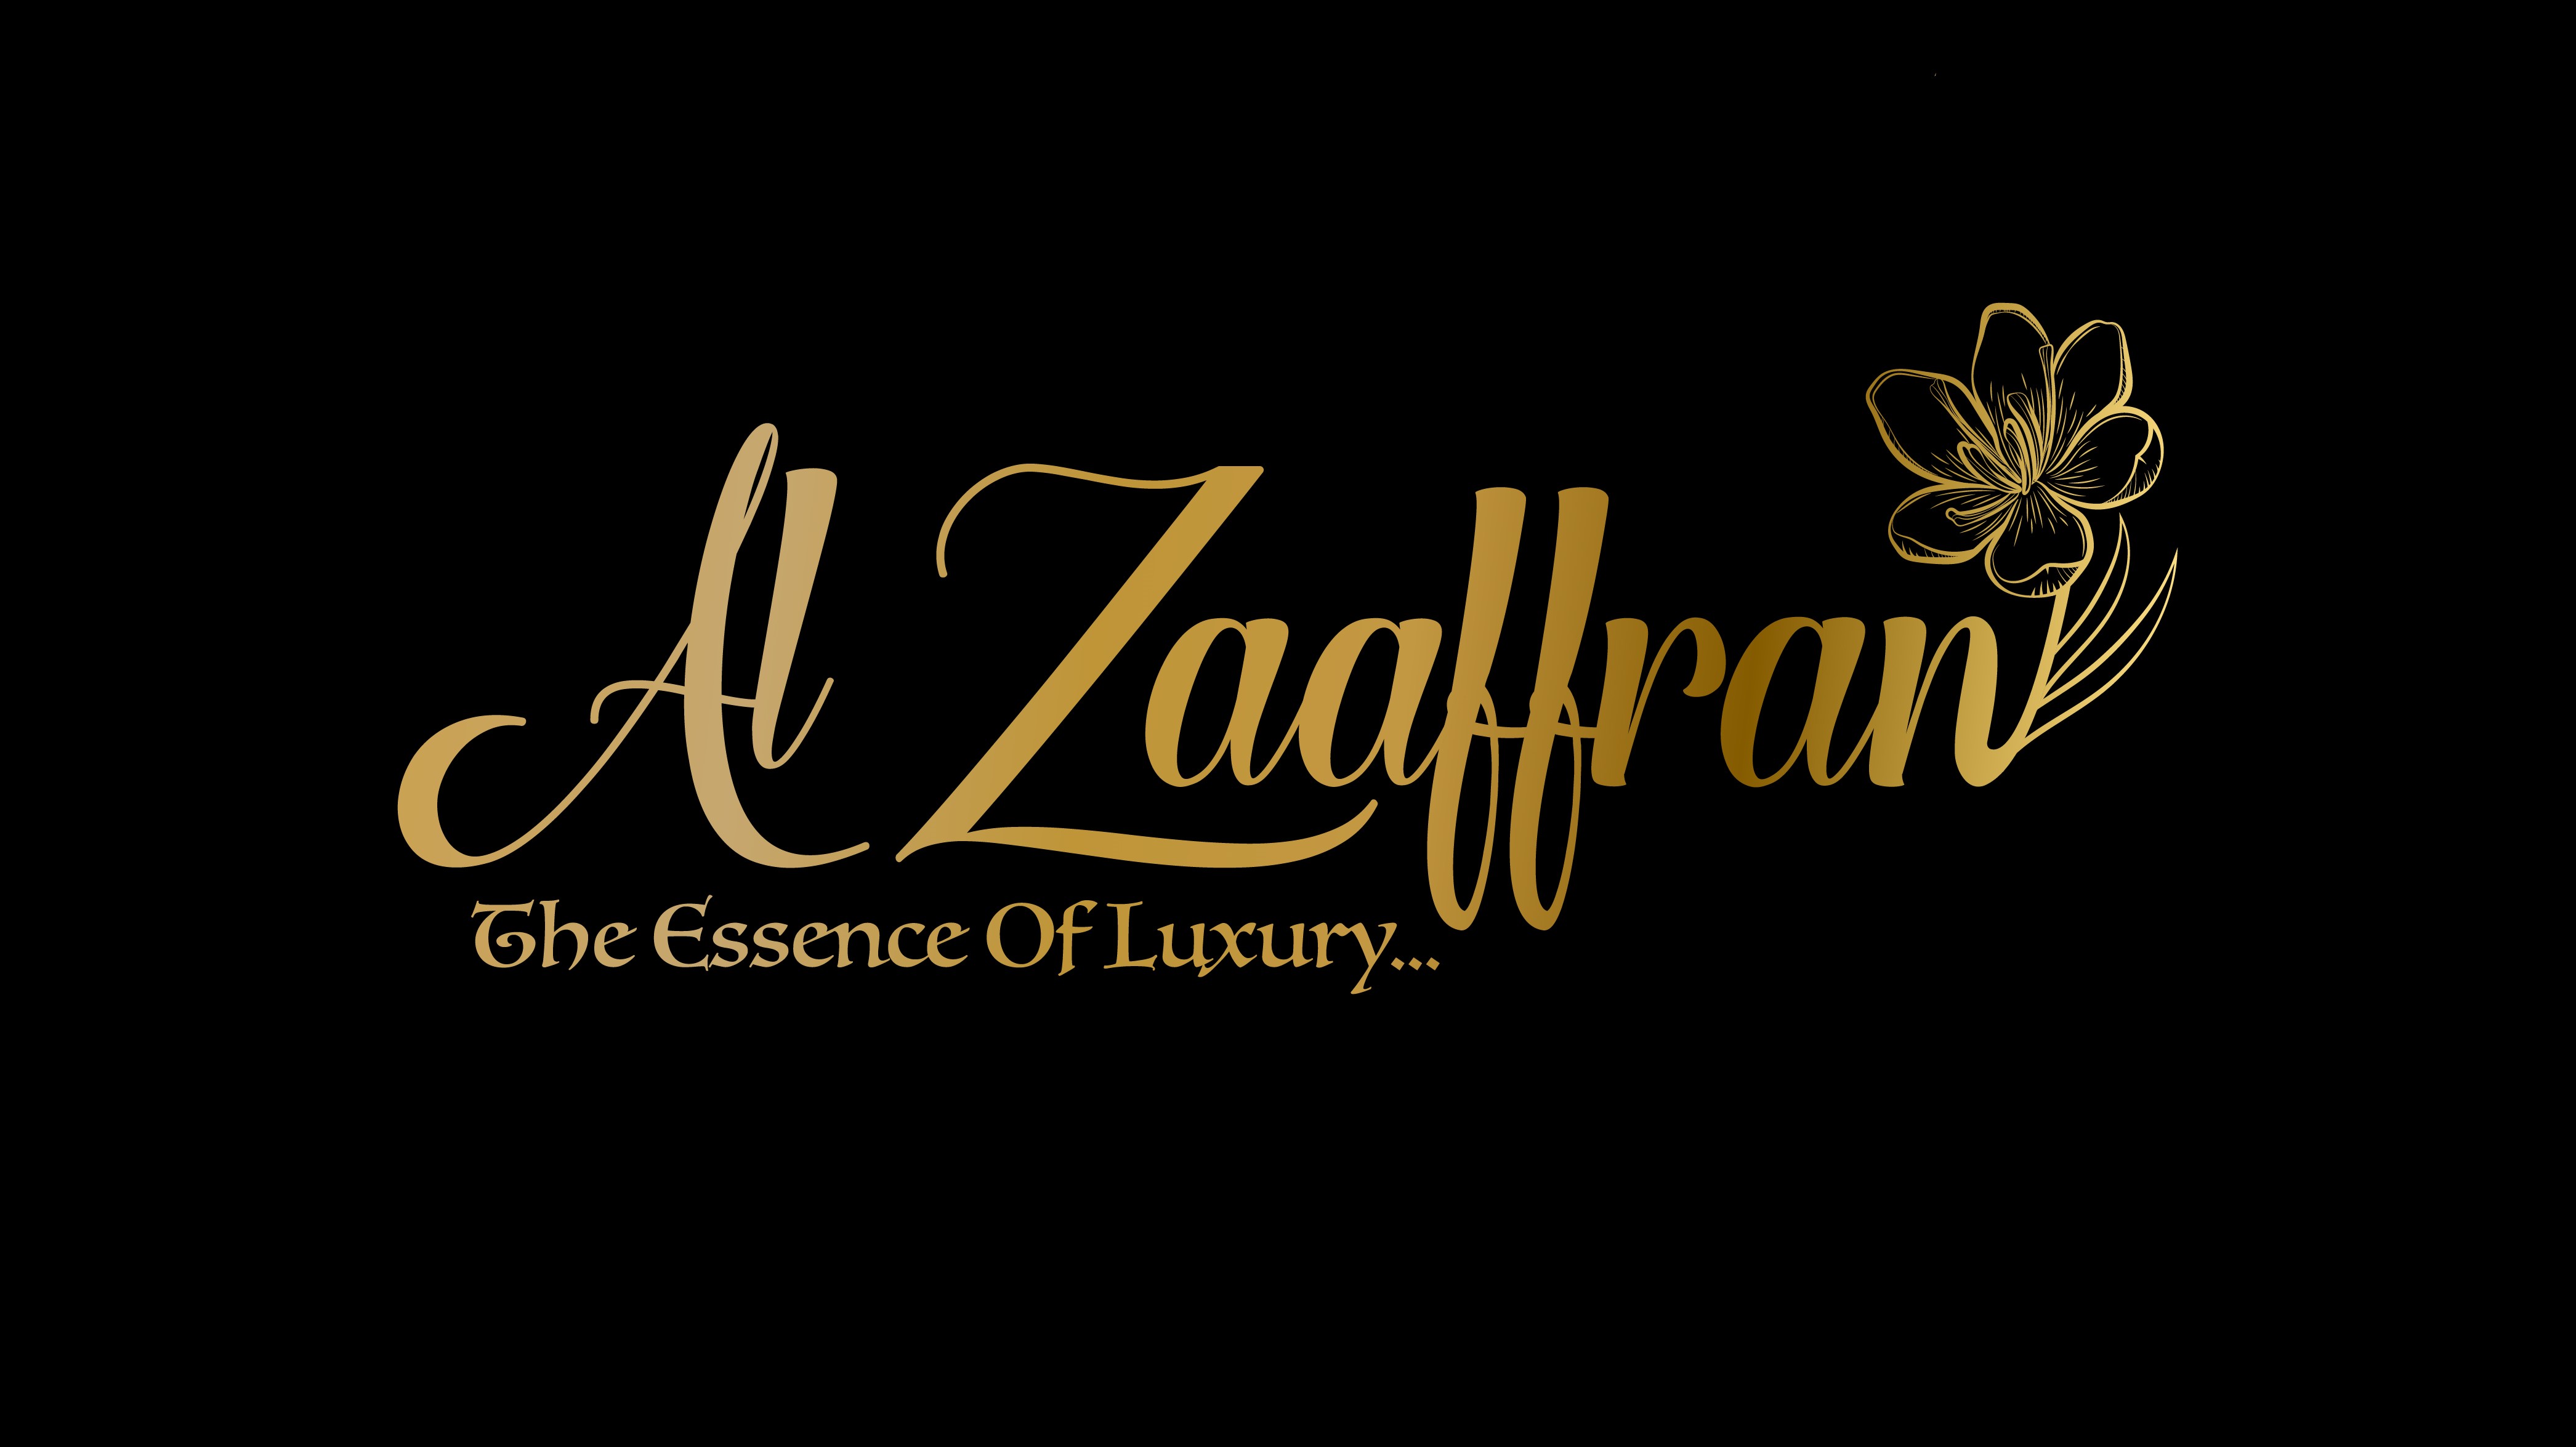 Al Zaaffran Restaurant